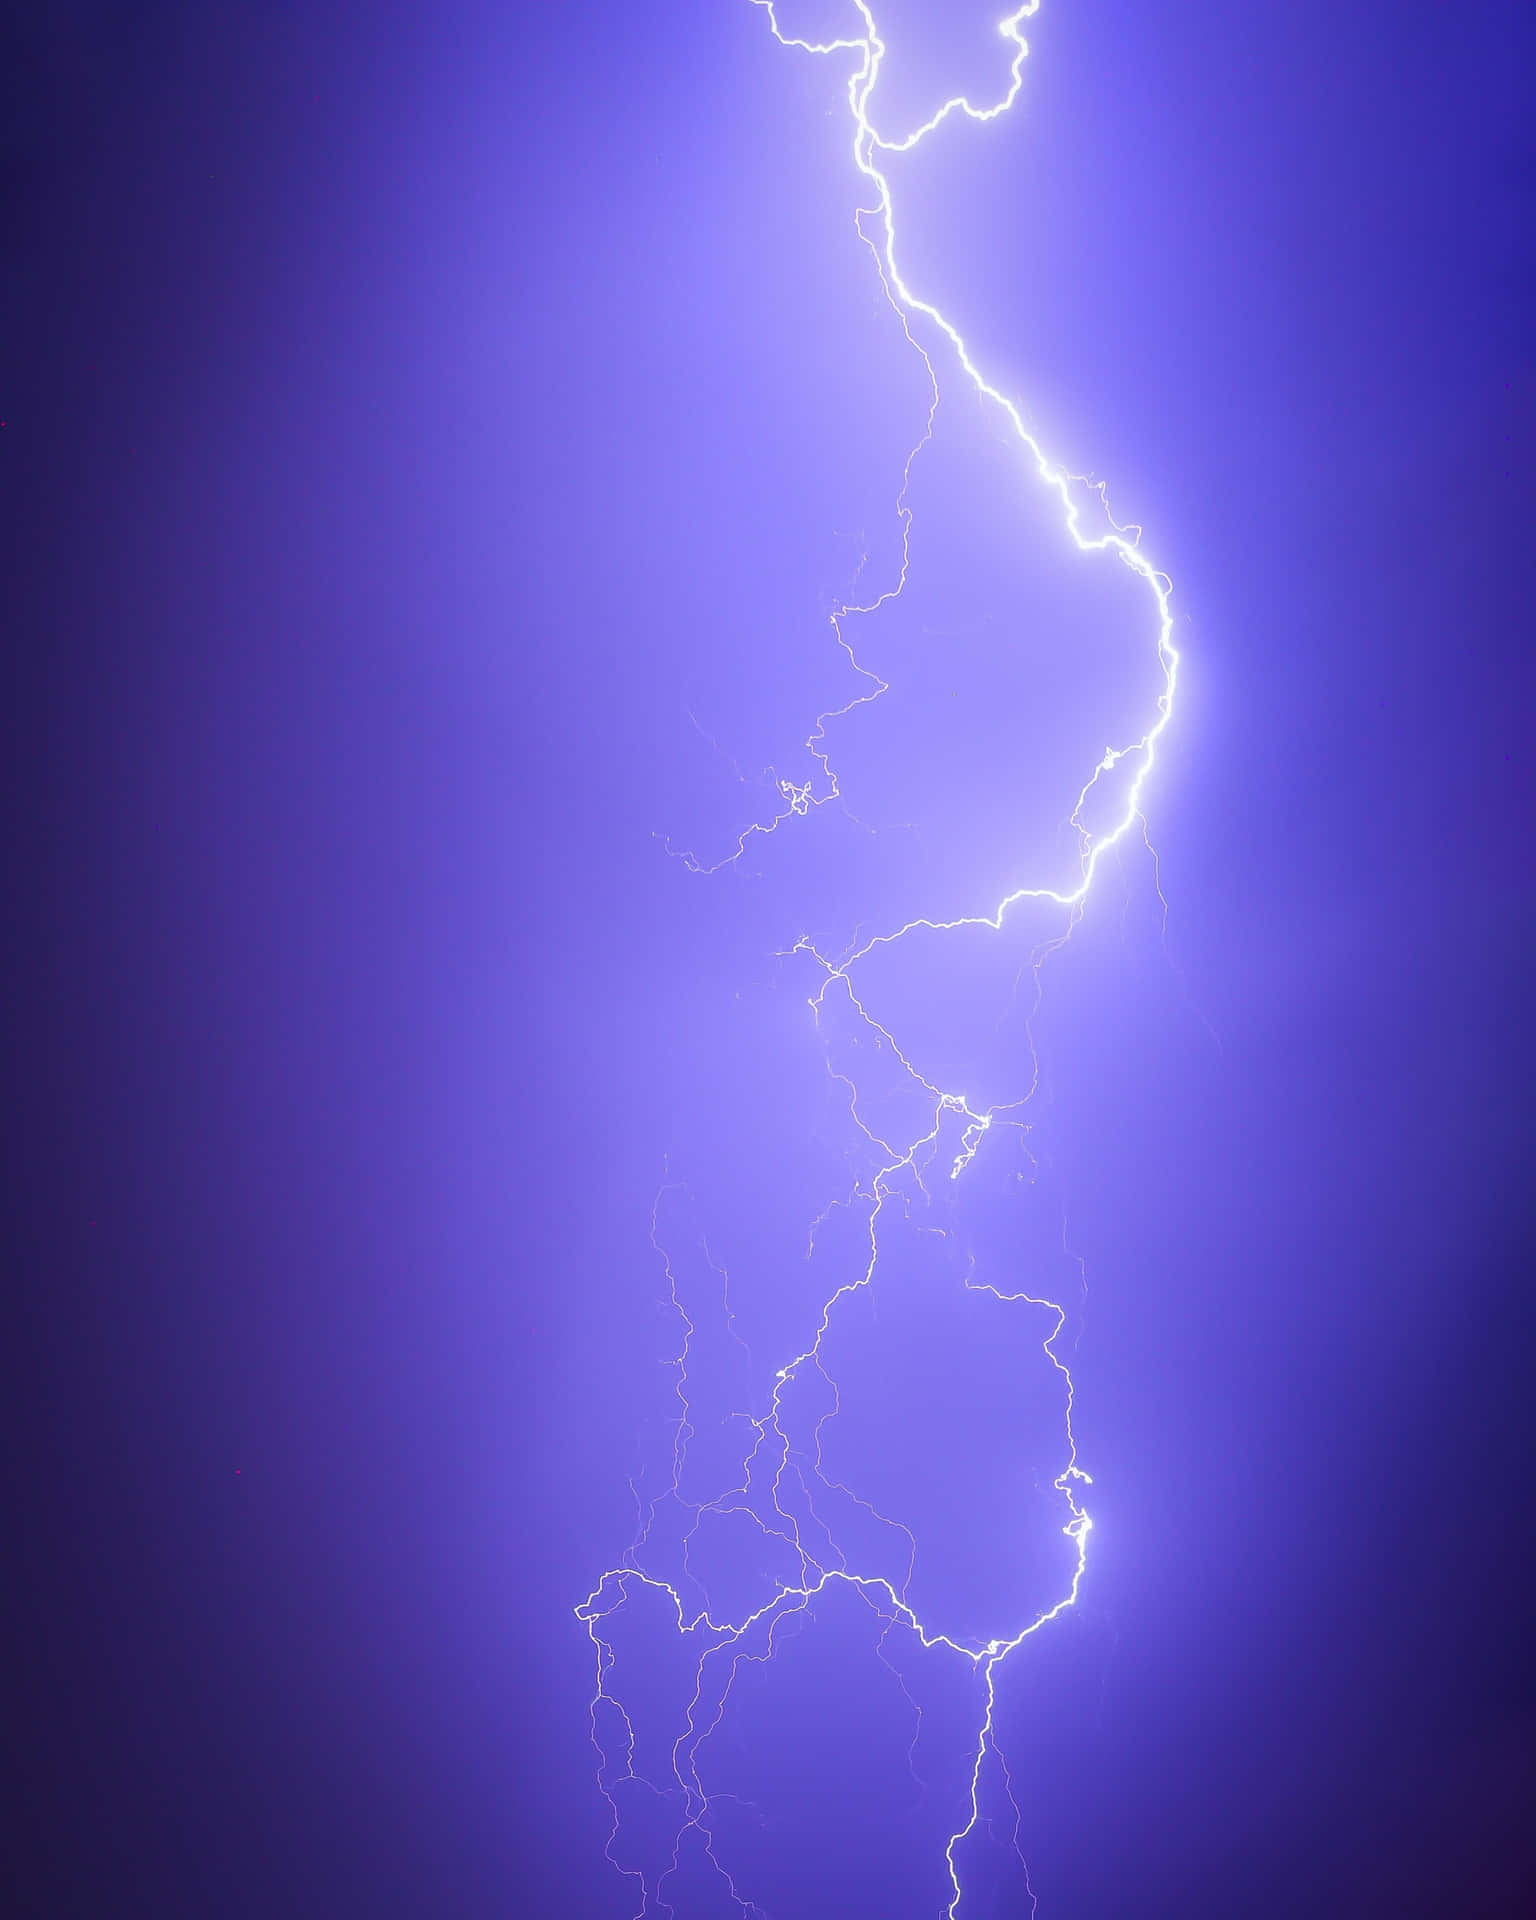 Real Lightning Storm Wallpaper Apk Download for Android Latest version  25 comlivephotolivewallpaperreallightningstorm